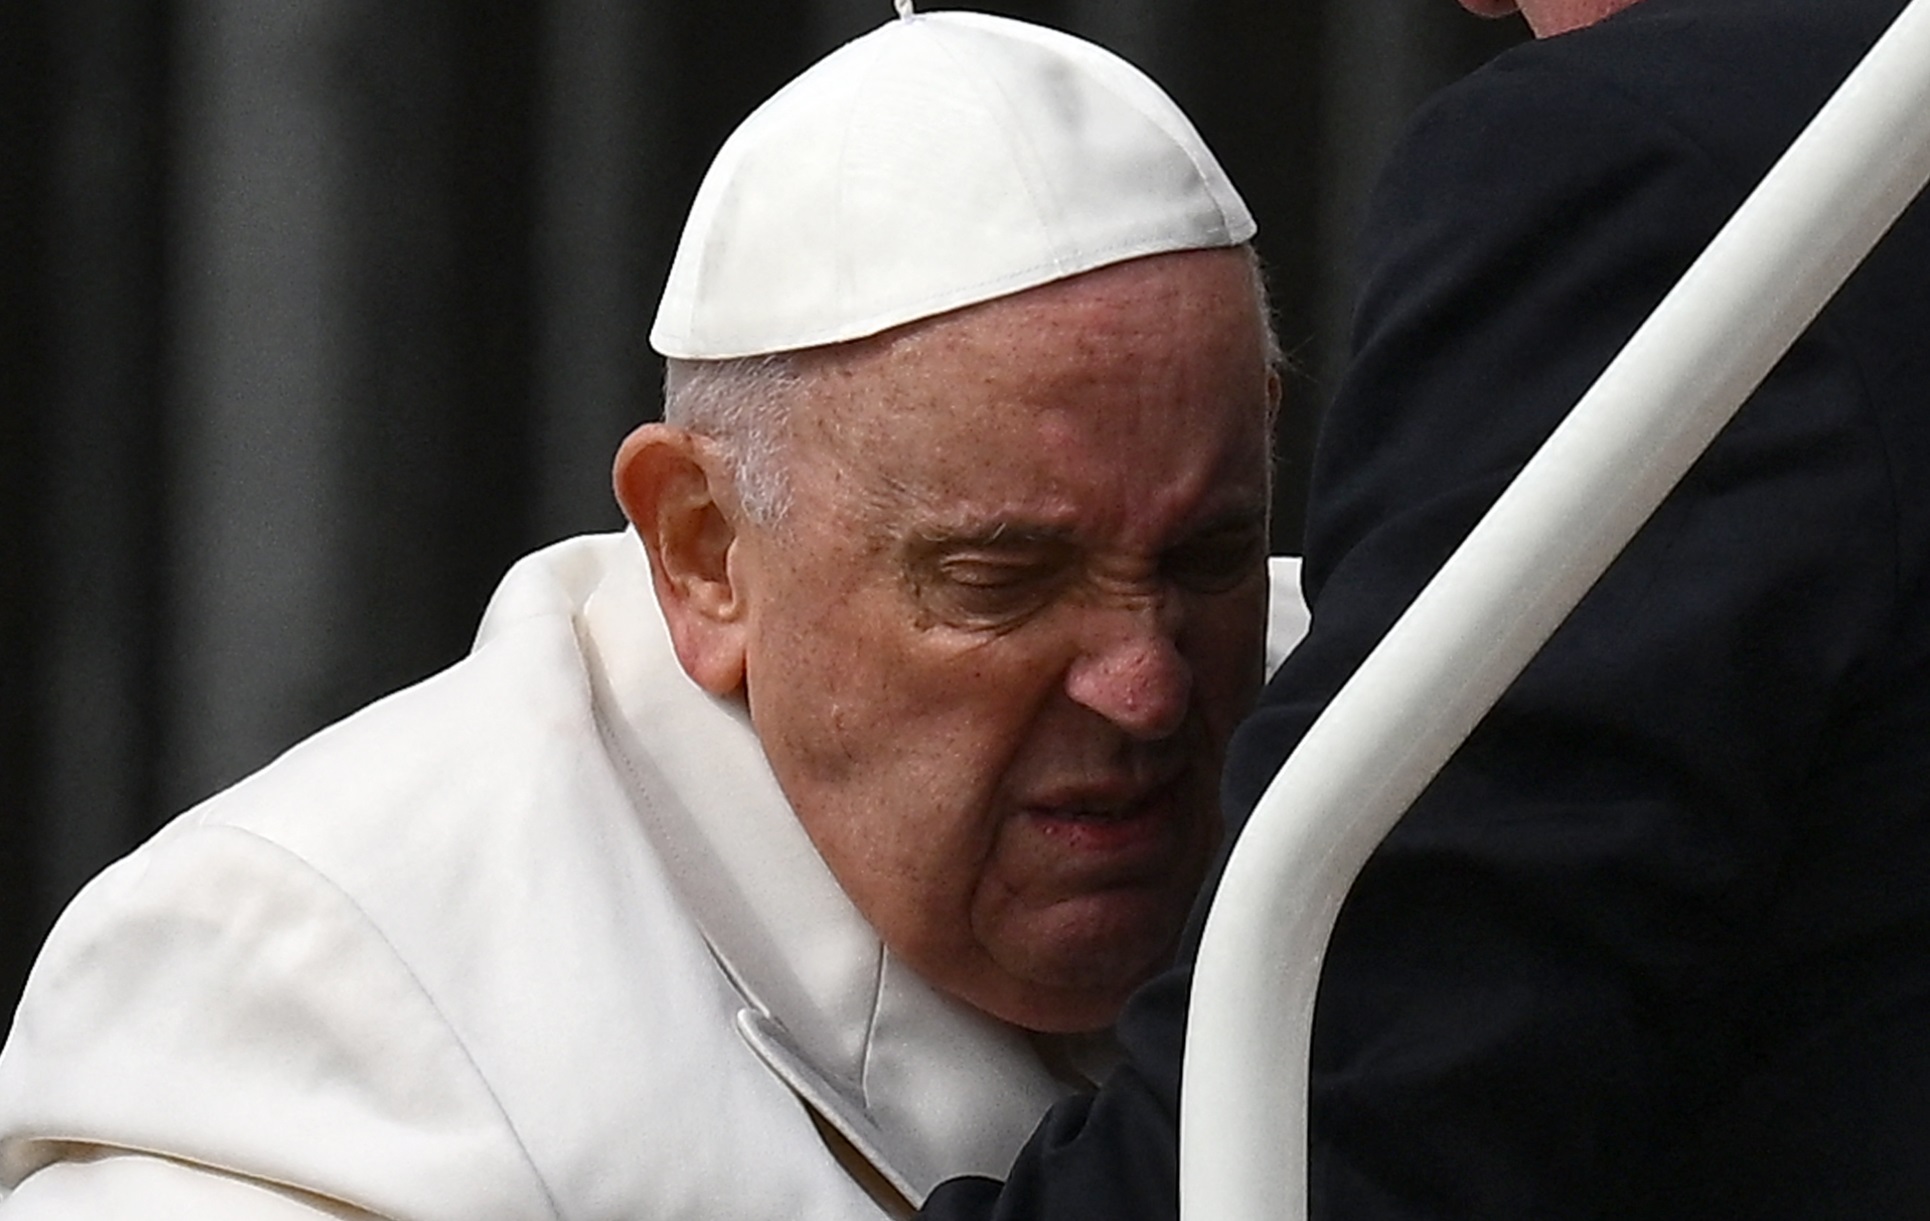 La salud del papa Francisco “mejora progresivamente” y sigue en tratamiento